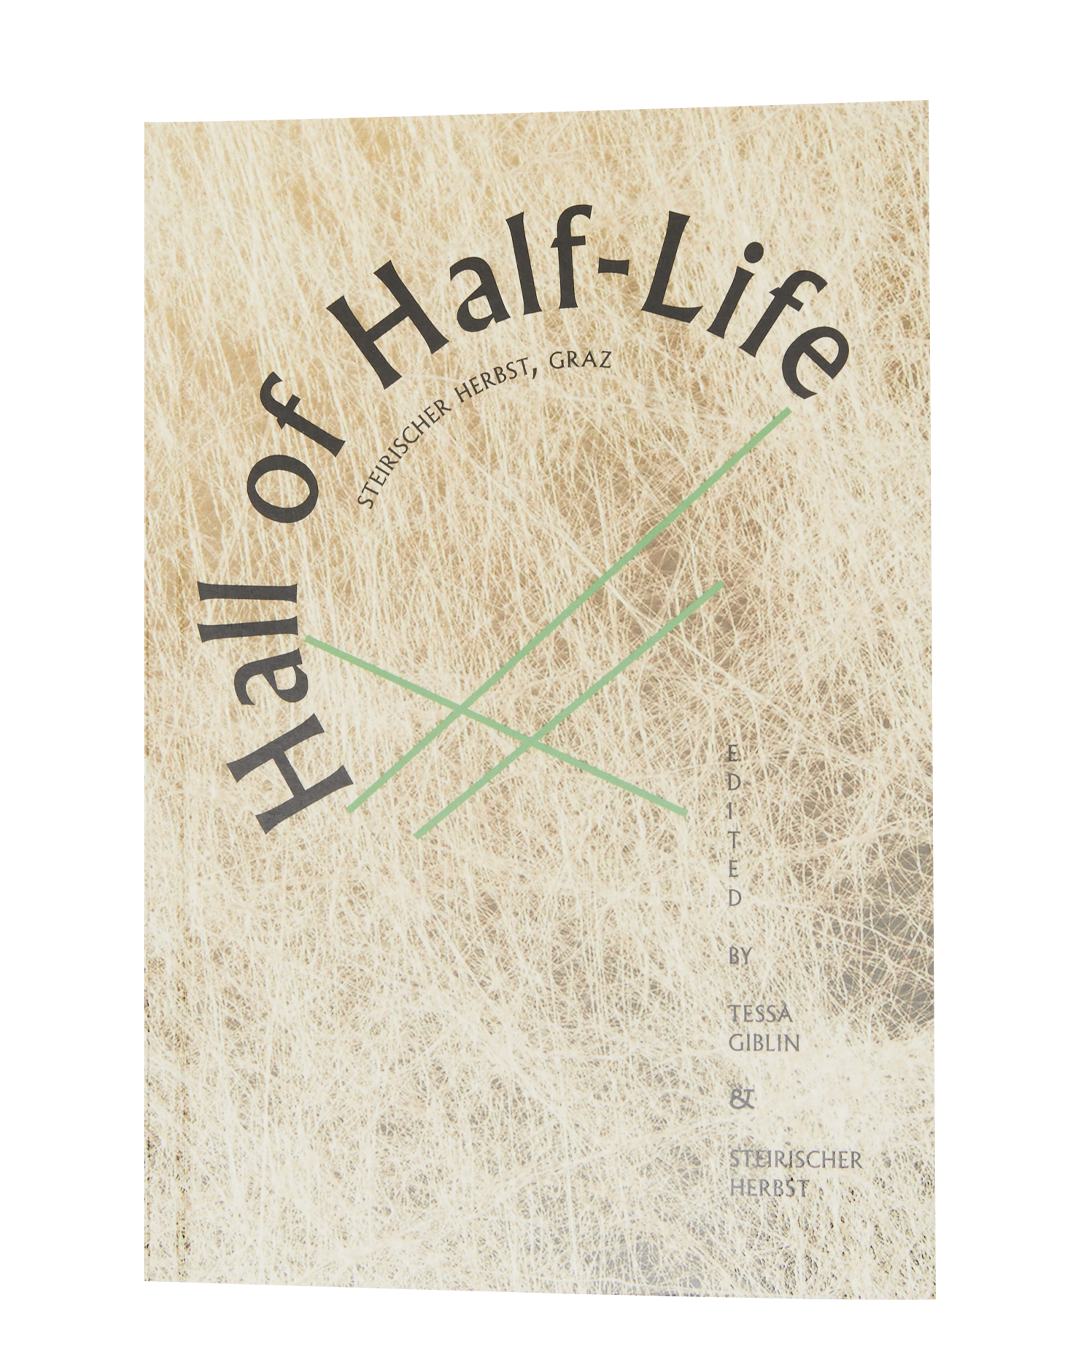 Hall of Half-Life